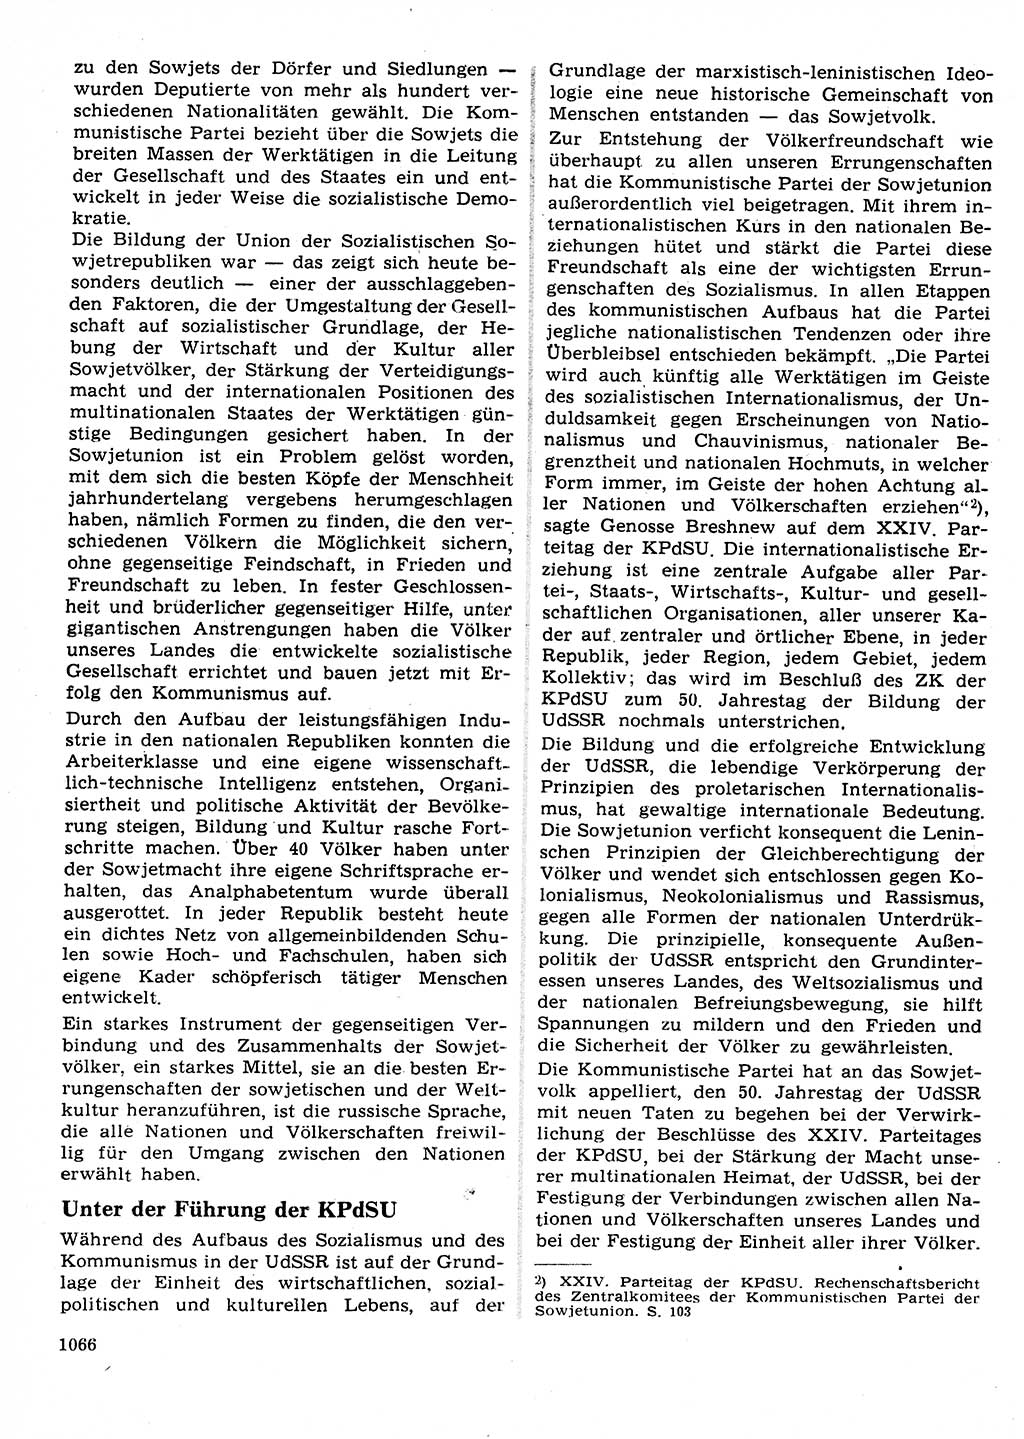 Neuer Weg (NW), Organ des Zentralkomitees (ZK) der SED (Sozialistische Einheitspartei Deutschlands) für Fragen des Parteilebens, 27. Jahrgang [Deutsche Demokratische Republik (DDR)] 1972, Seite 1066 (NW ZK SED DDR 1972, S. 1066)